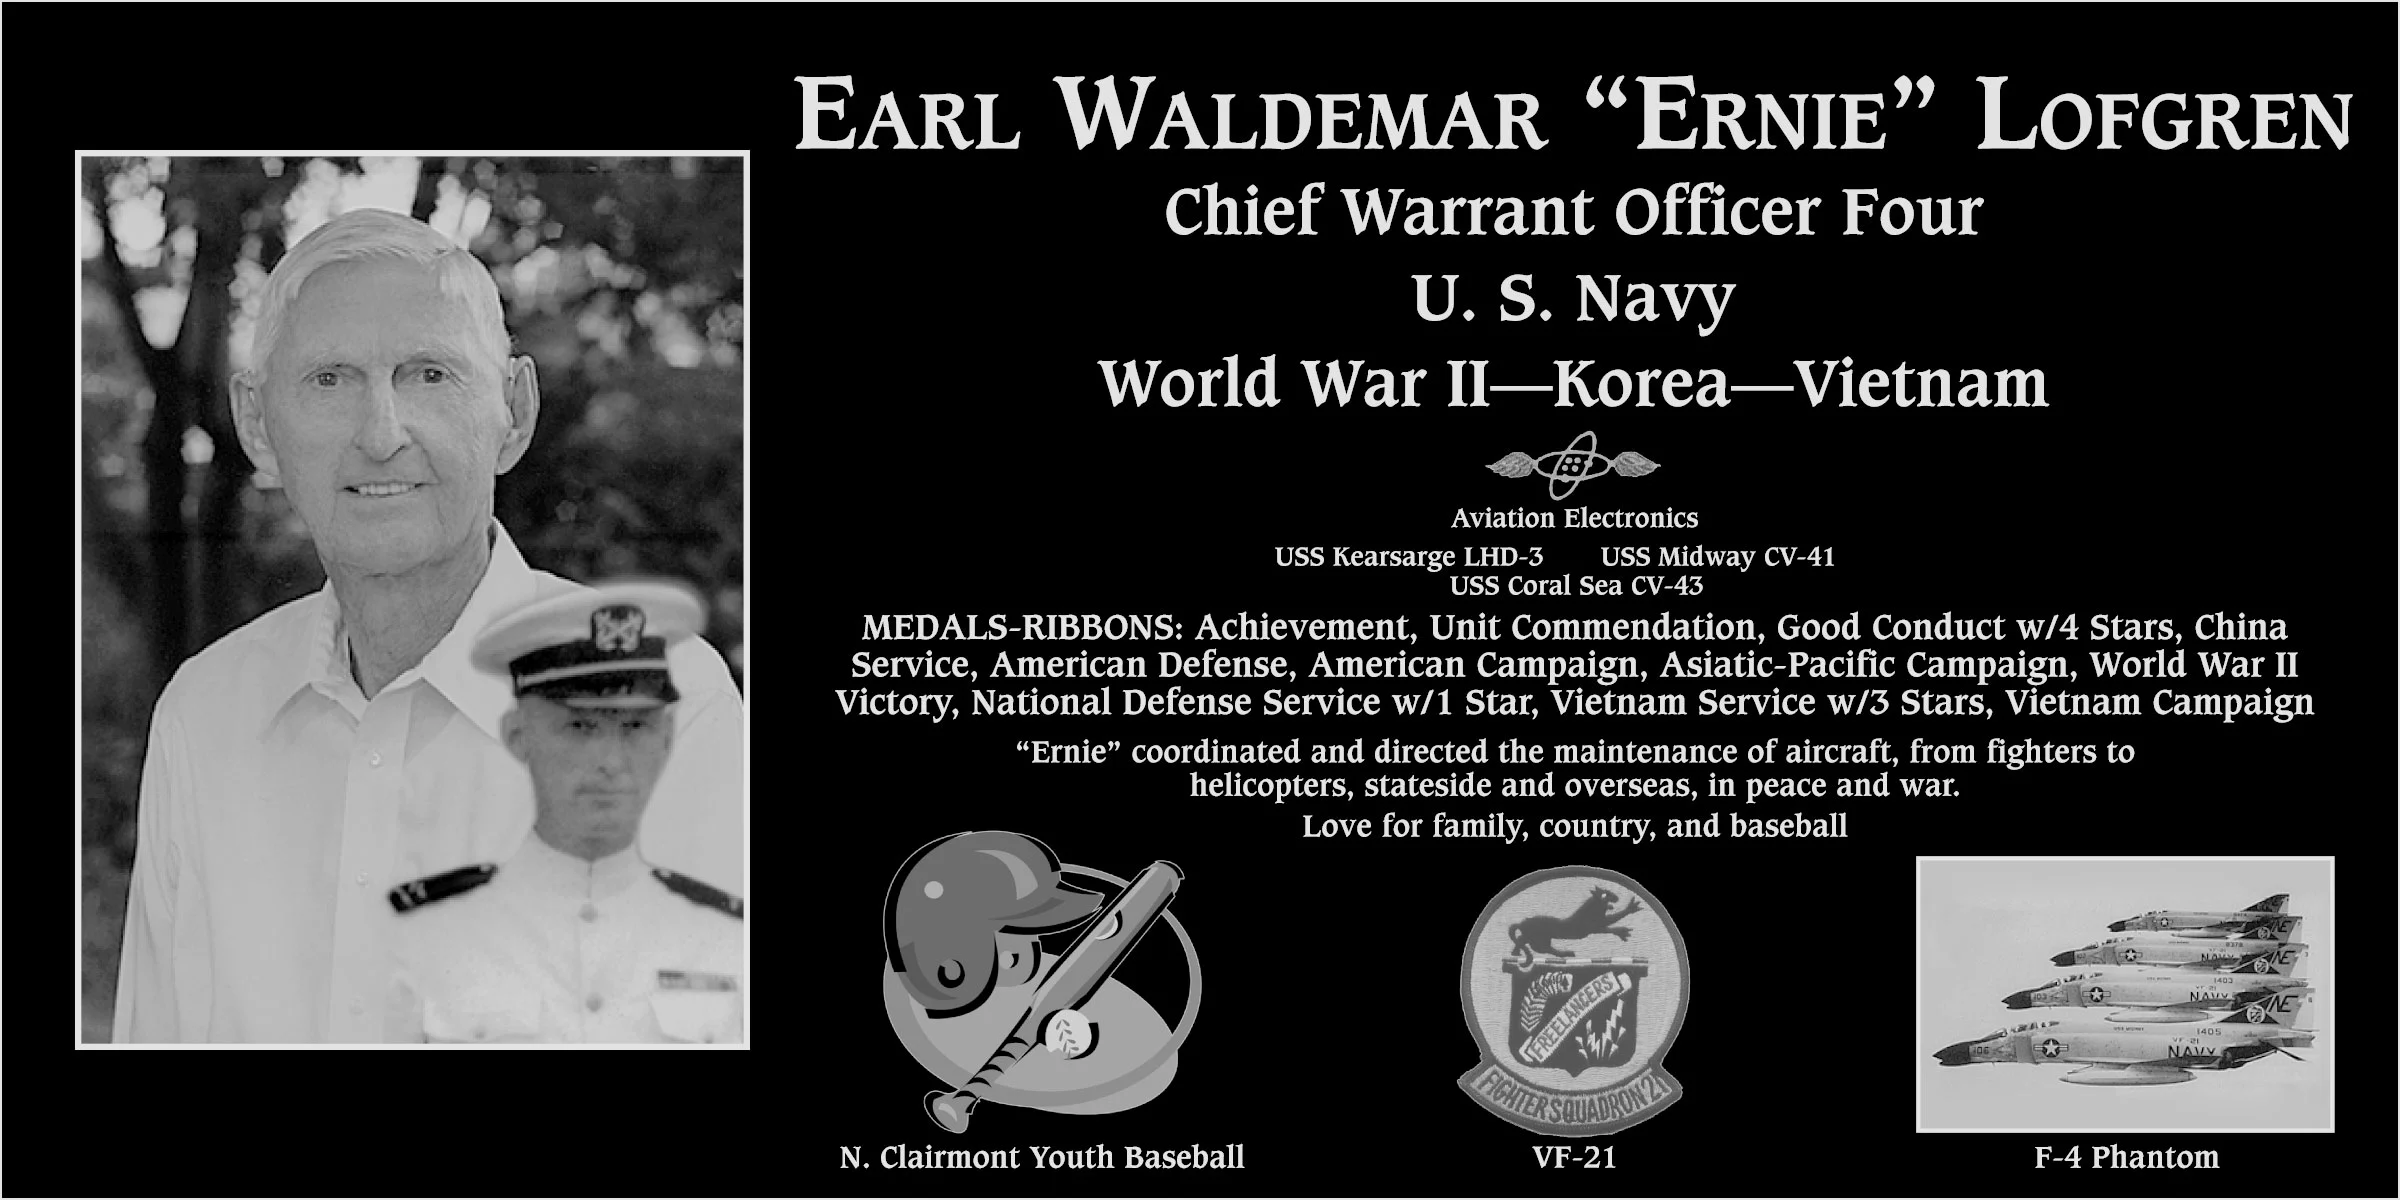 Earl Waldemar “Ernie” Lofgren